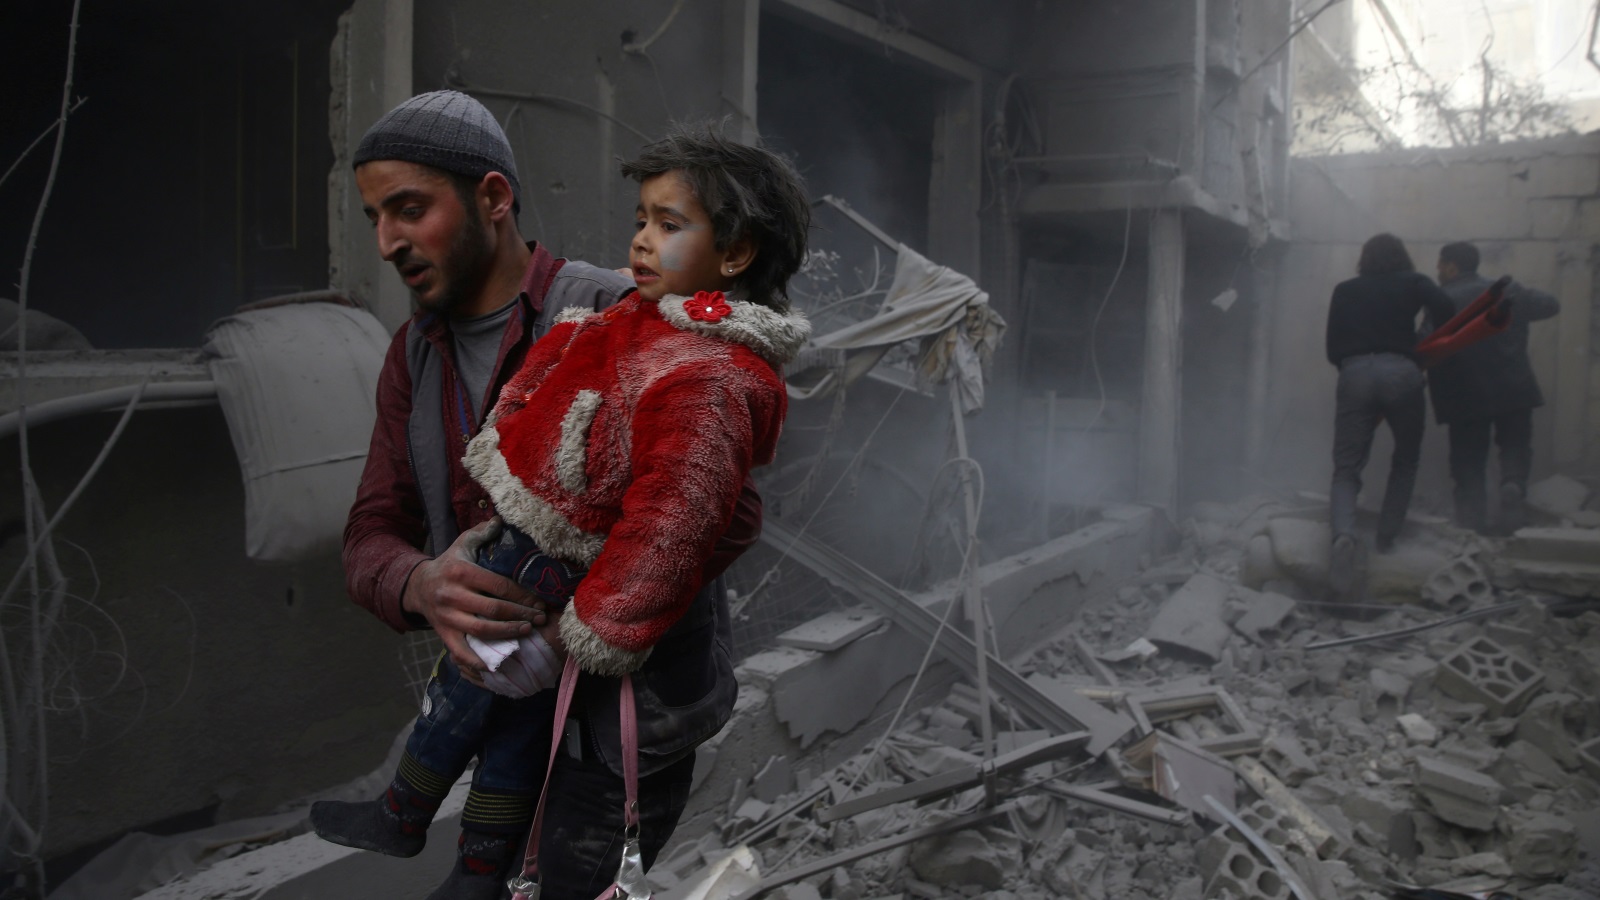 ‪القصف يتواصل‬ القصف يتواصل على الغوطة الشرقية المحاصرة (رويترز)